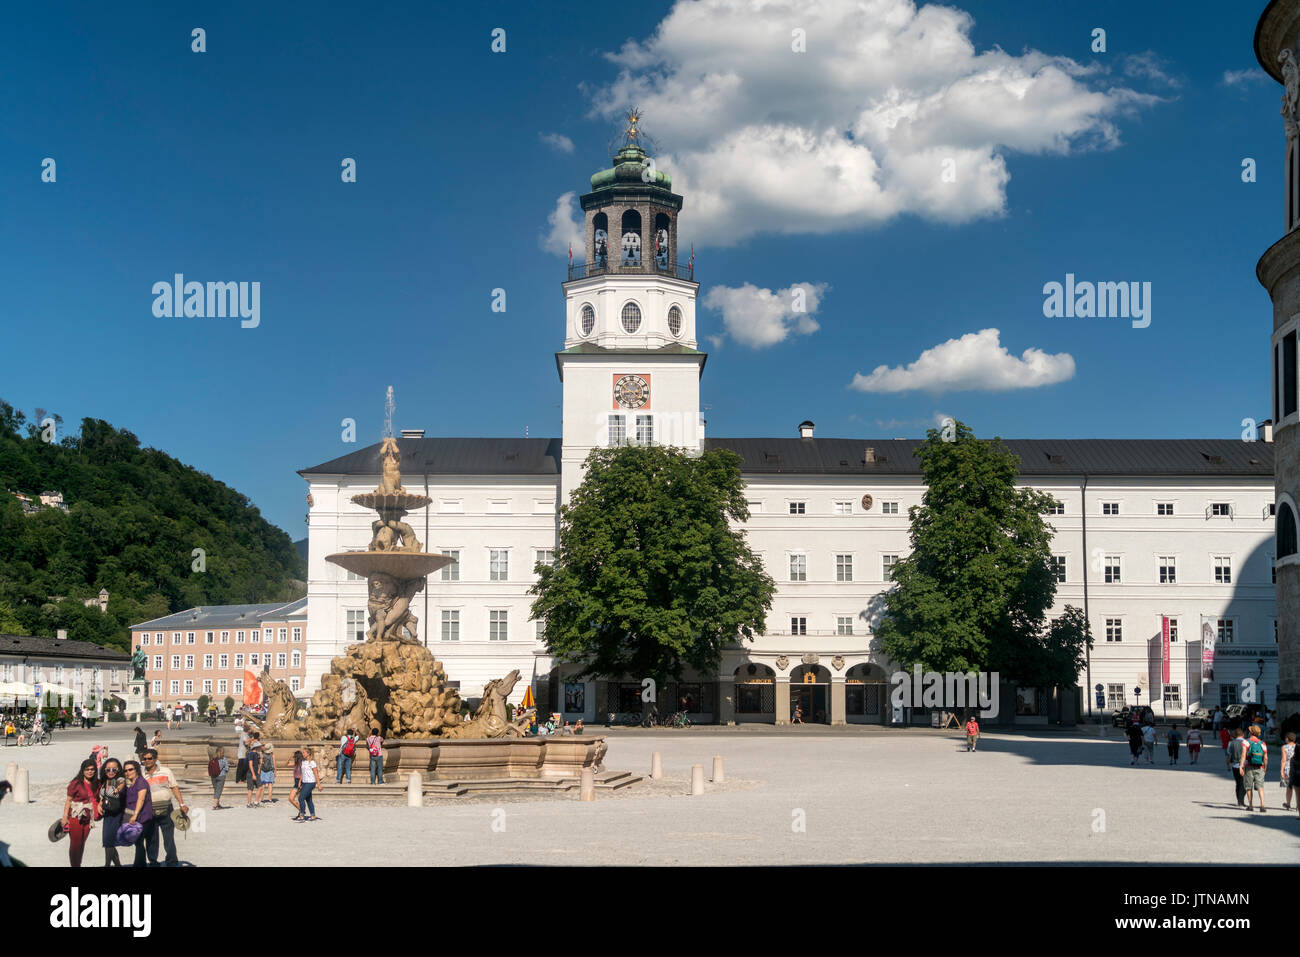 Residenzbrunnen und der Turm mit dem Glockenspiel der Neuen Residenz auf dem Residenzplatz, Salisburgo, Österreich | Residenzbrunnen fontana e Neue Foto Stock